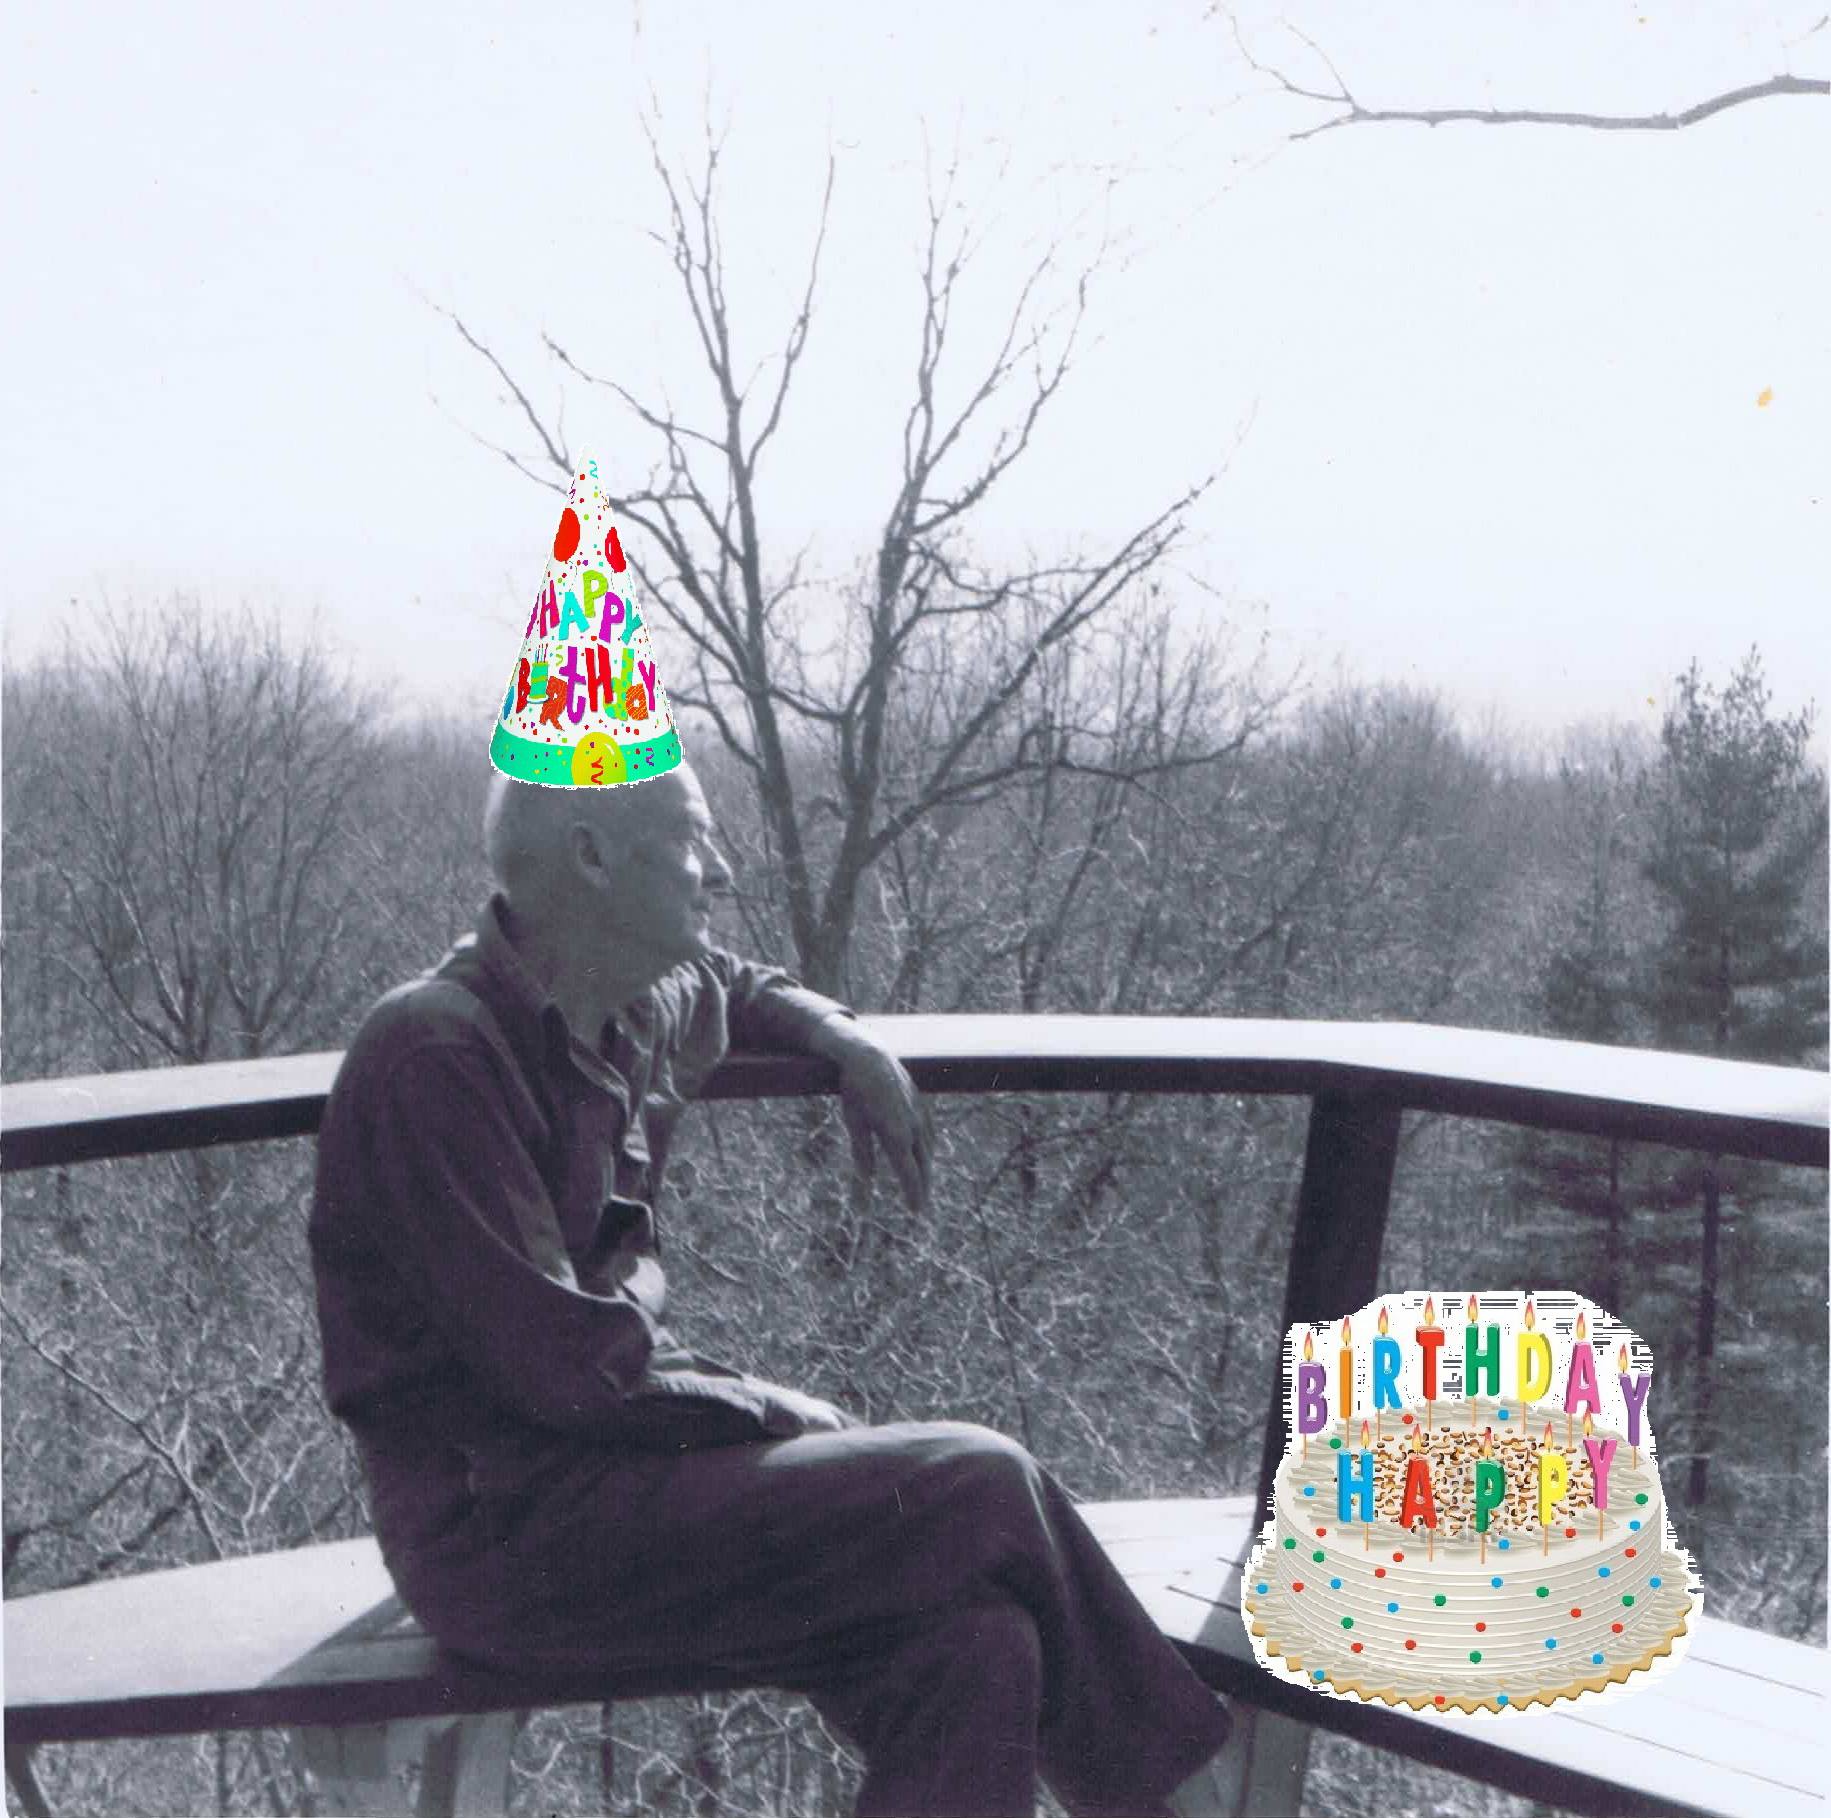 wharton with photoshopped birthday cake on the deck